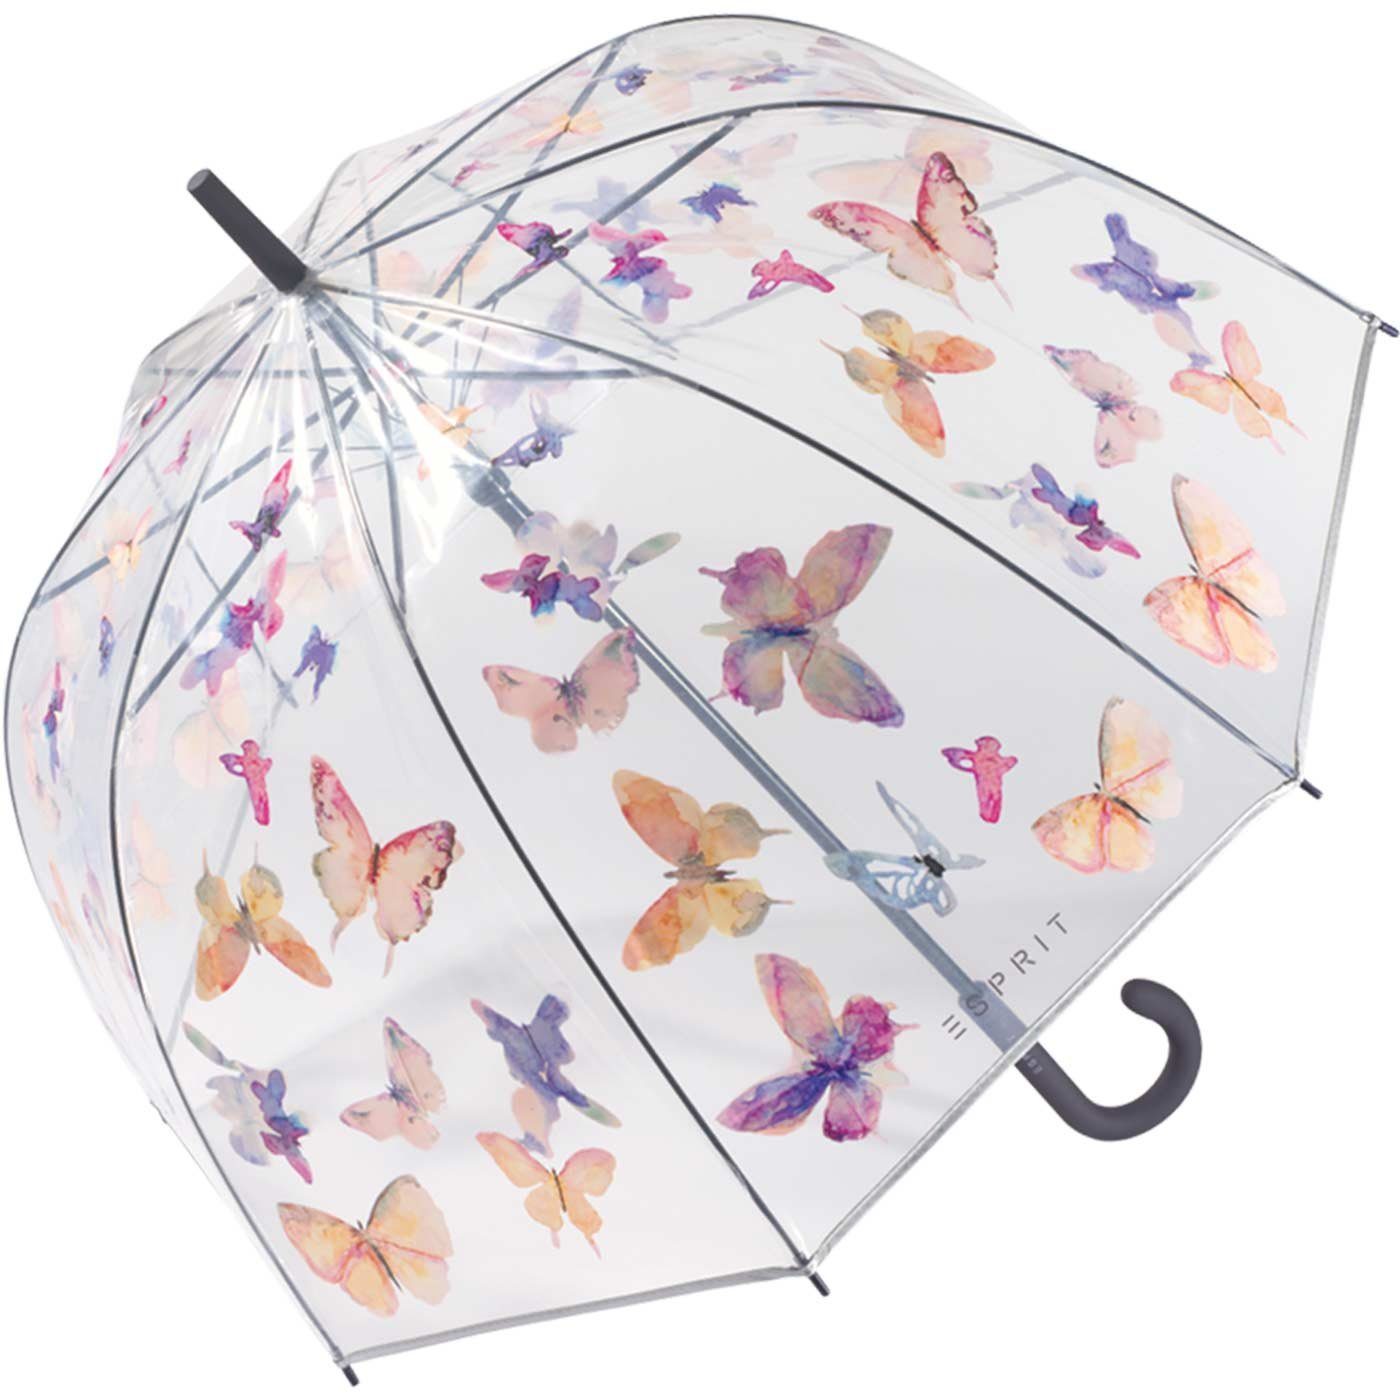 Dance, transparent Glockenschirm mit Langregenschirm Automatik Esprit Butterfly durchsichtig